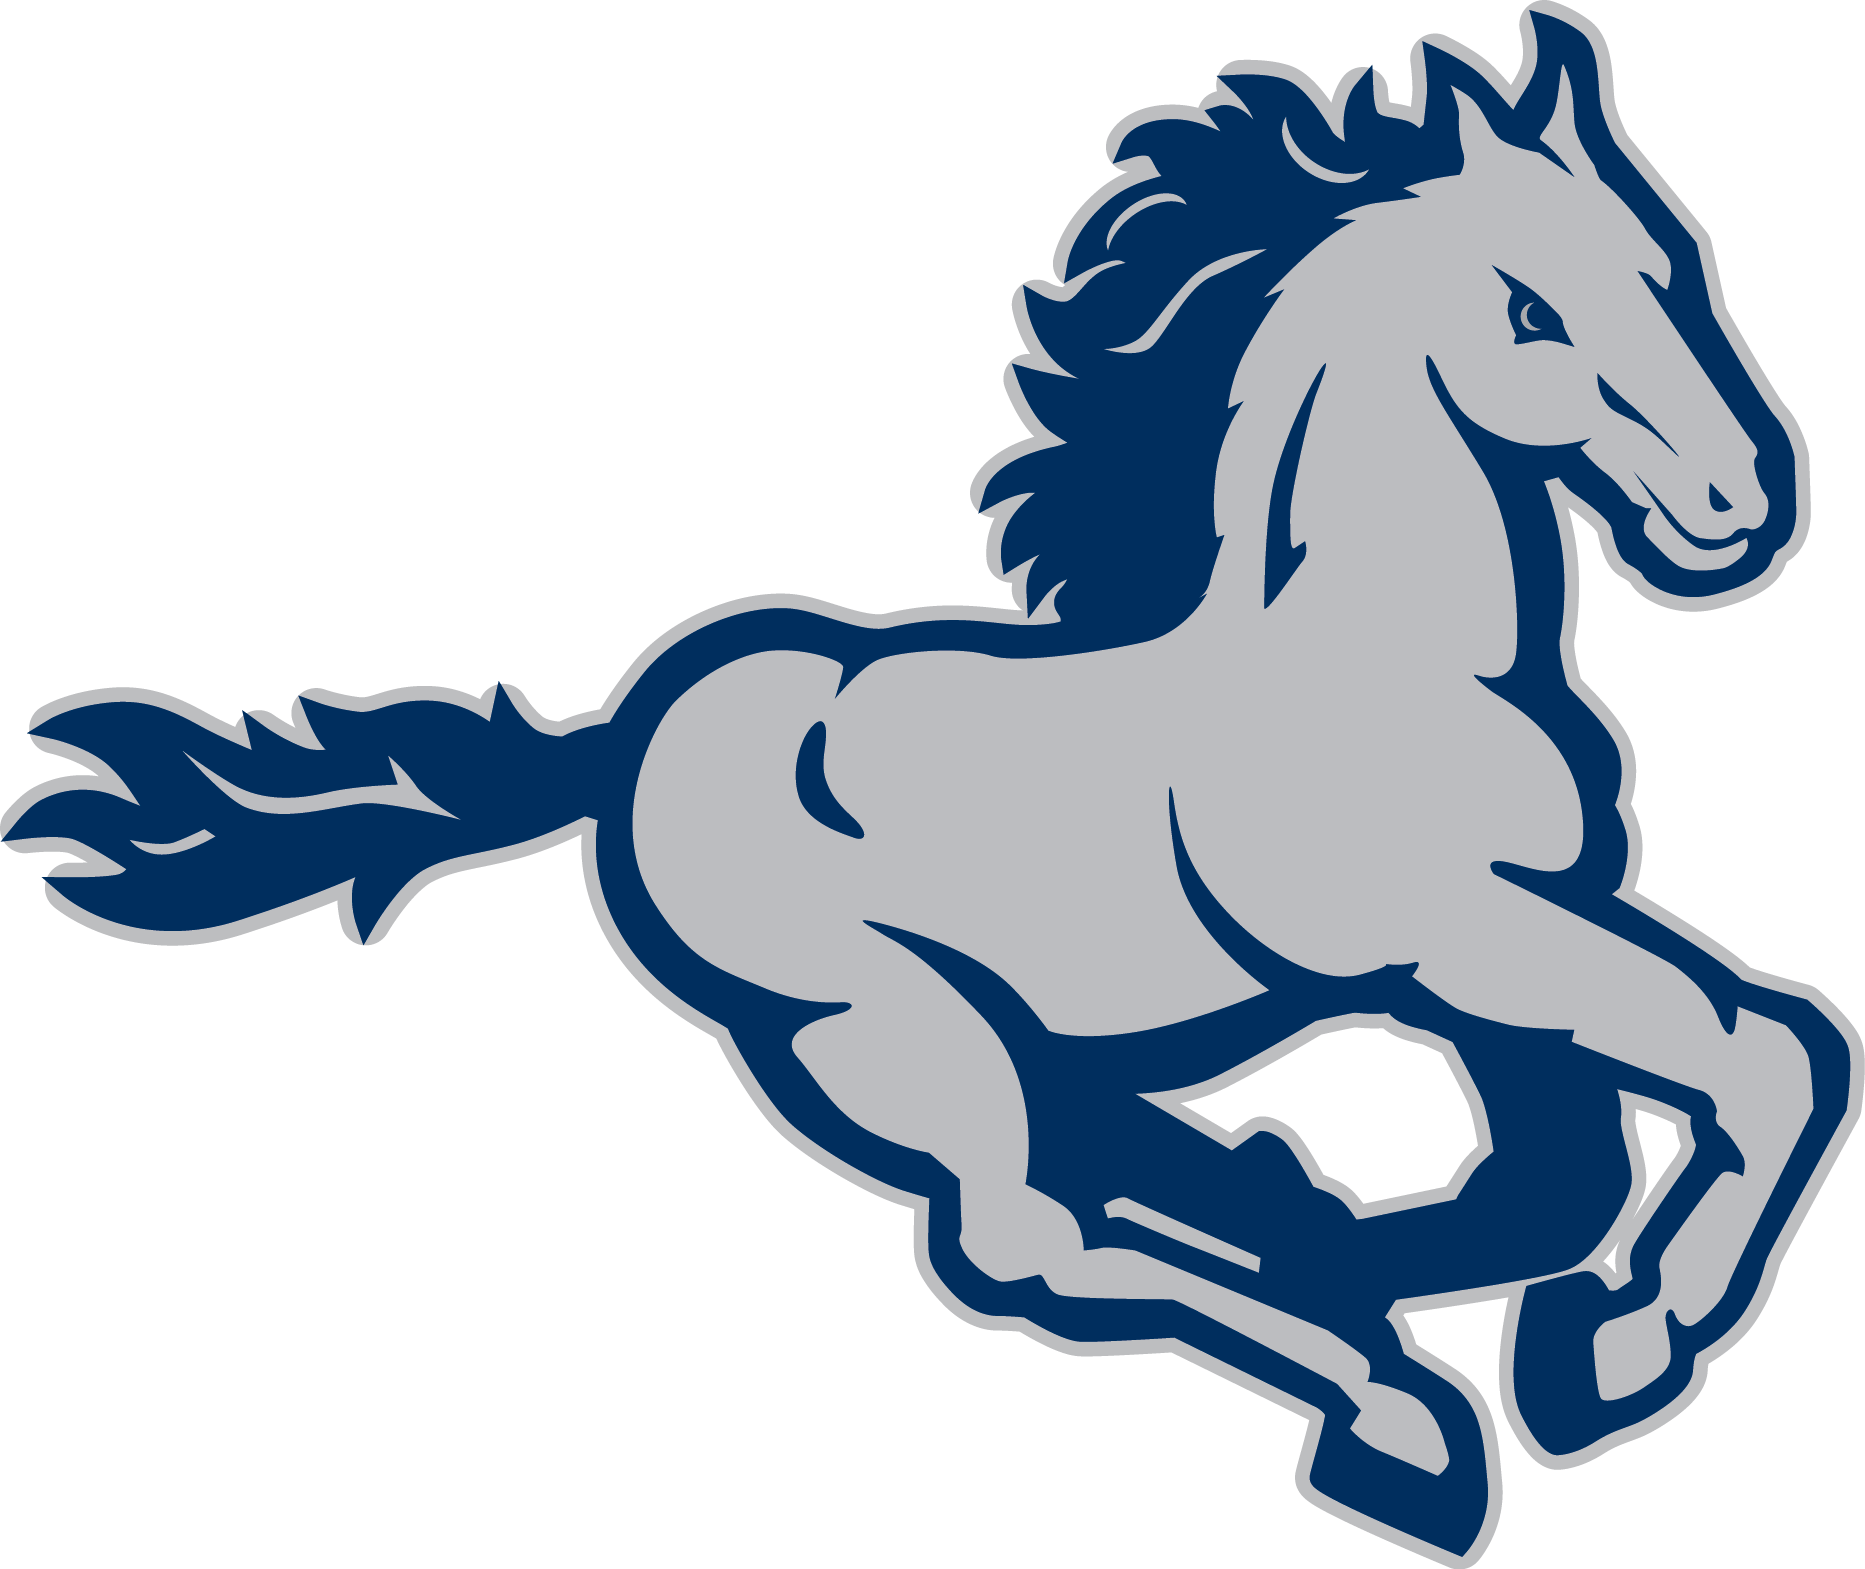 Mustang Mascot Logo - Pin by Chris Basten on Stallions-Mustangs Logos | Pinterest | Logo ...